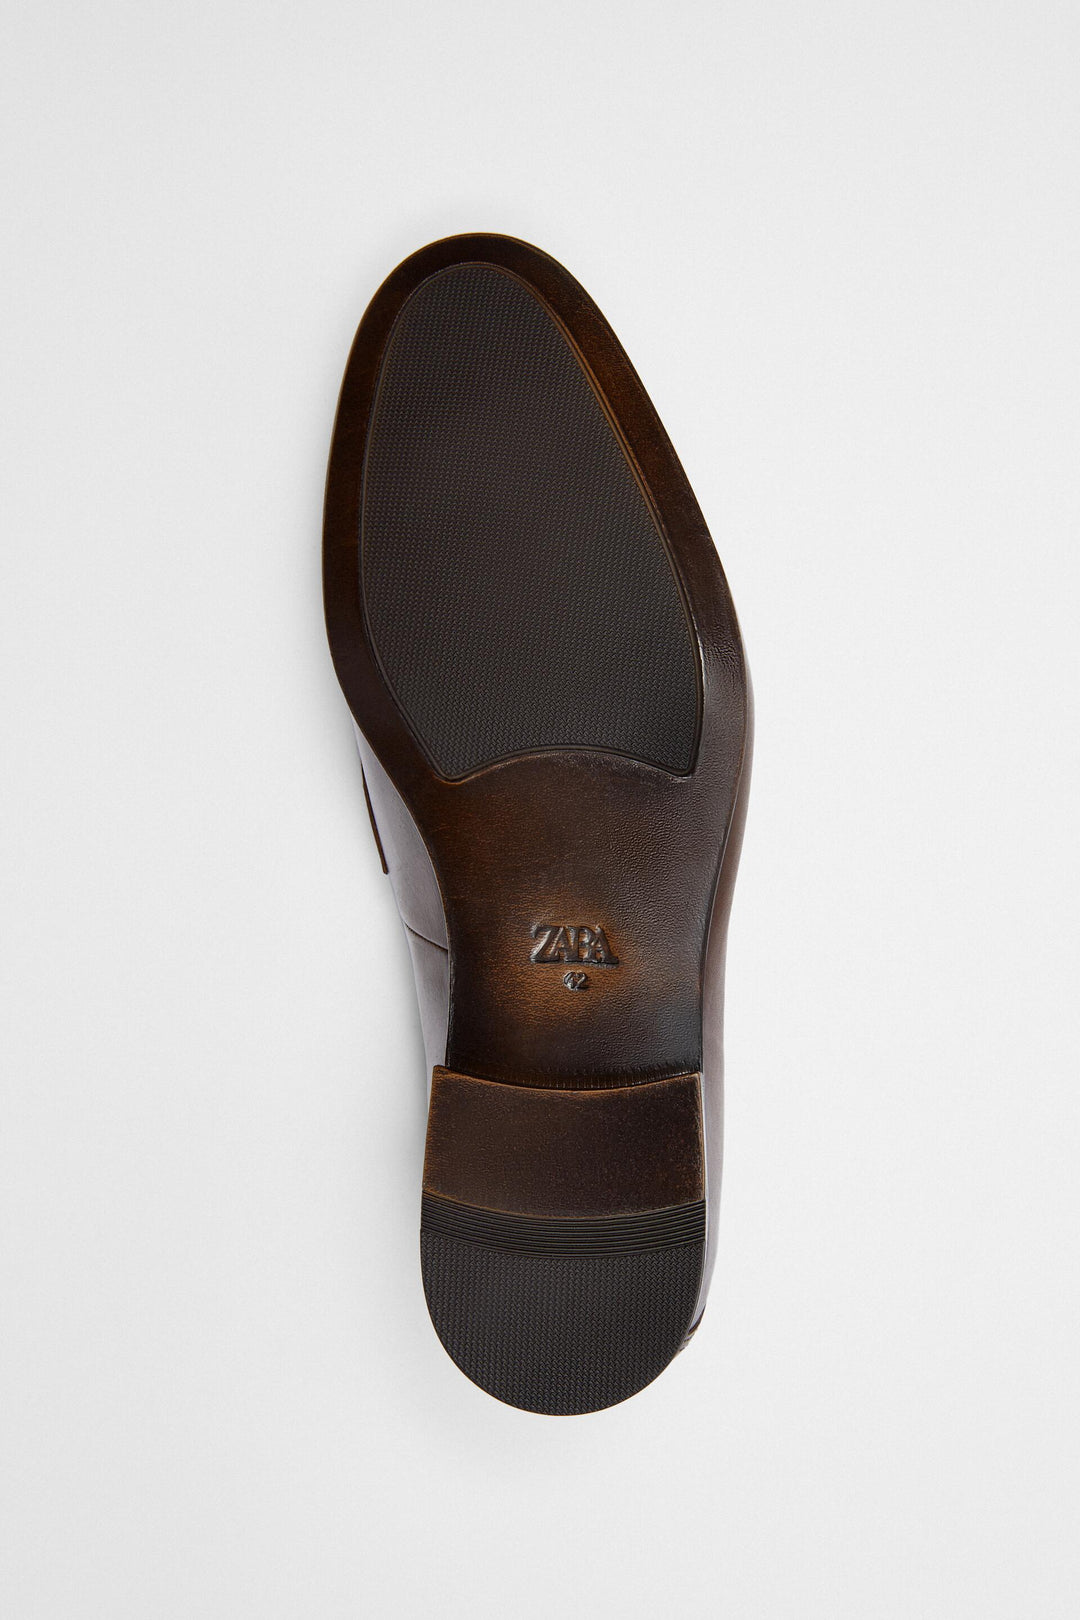 Chaussures marque_Zara, genre_Homme Moudda Tunisie1